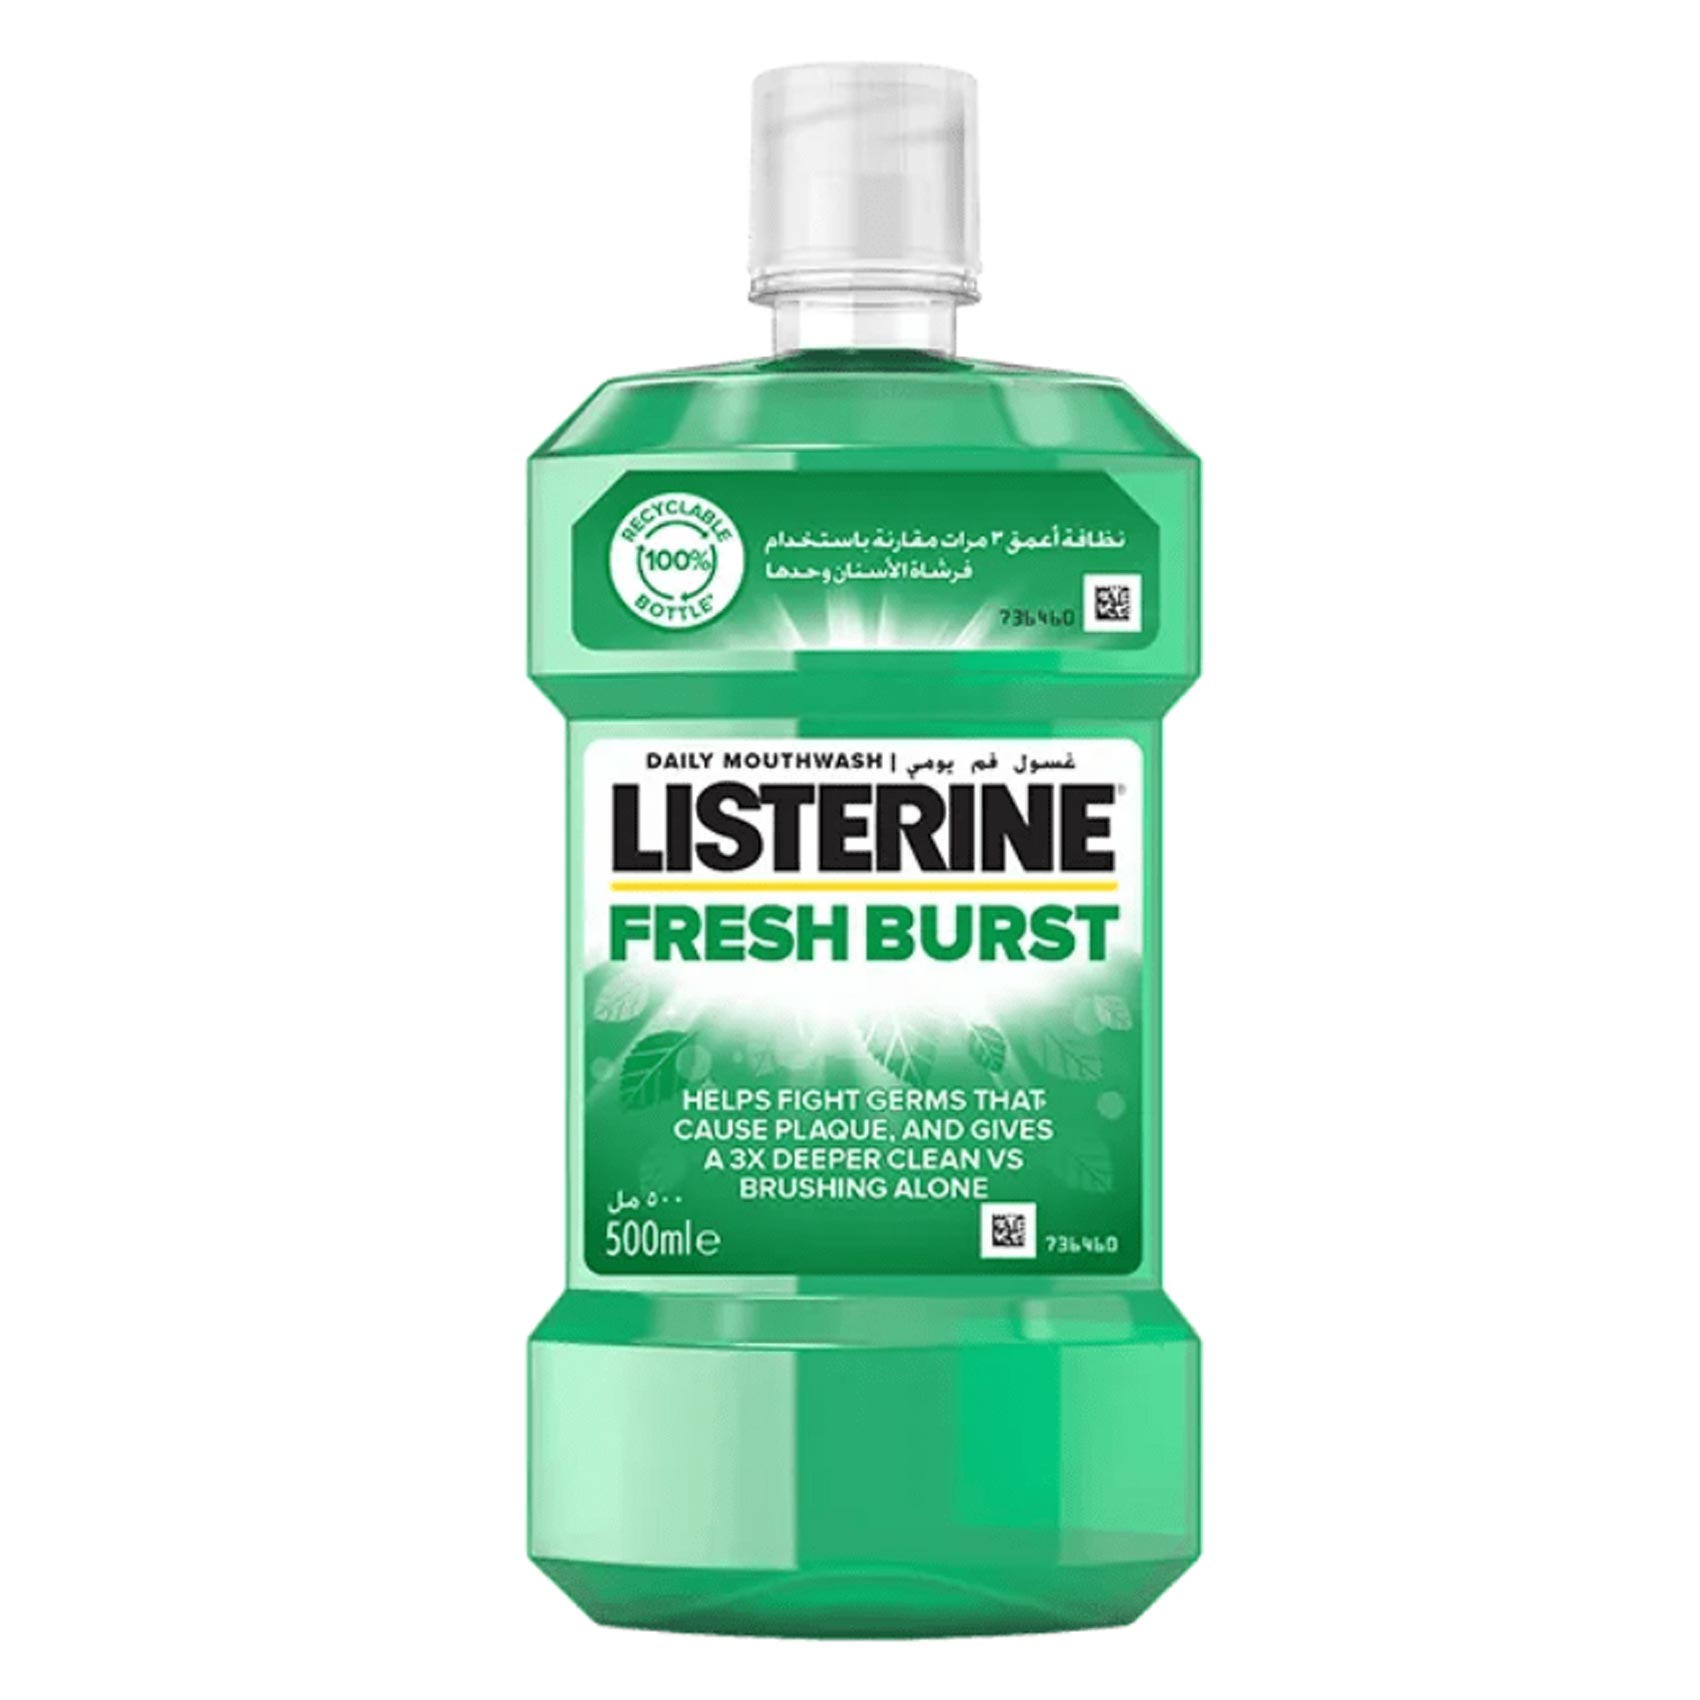 Listerine Fresh Burst Antiseptic Mouthwash 500ML